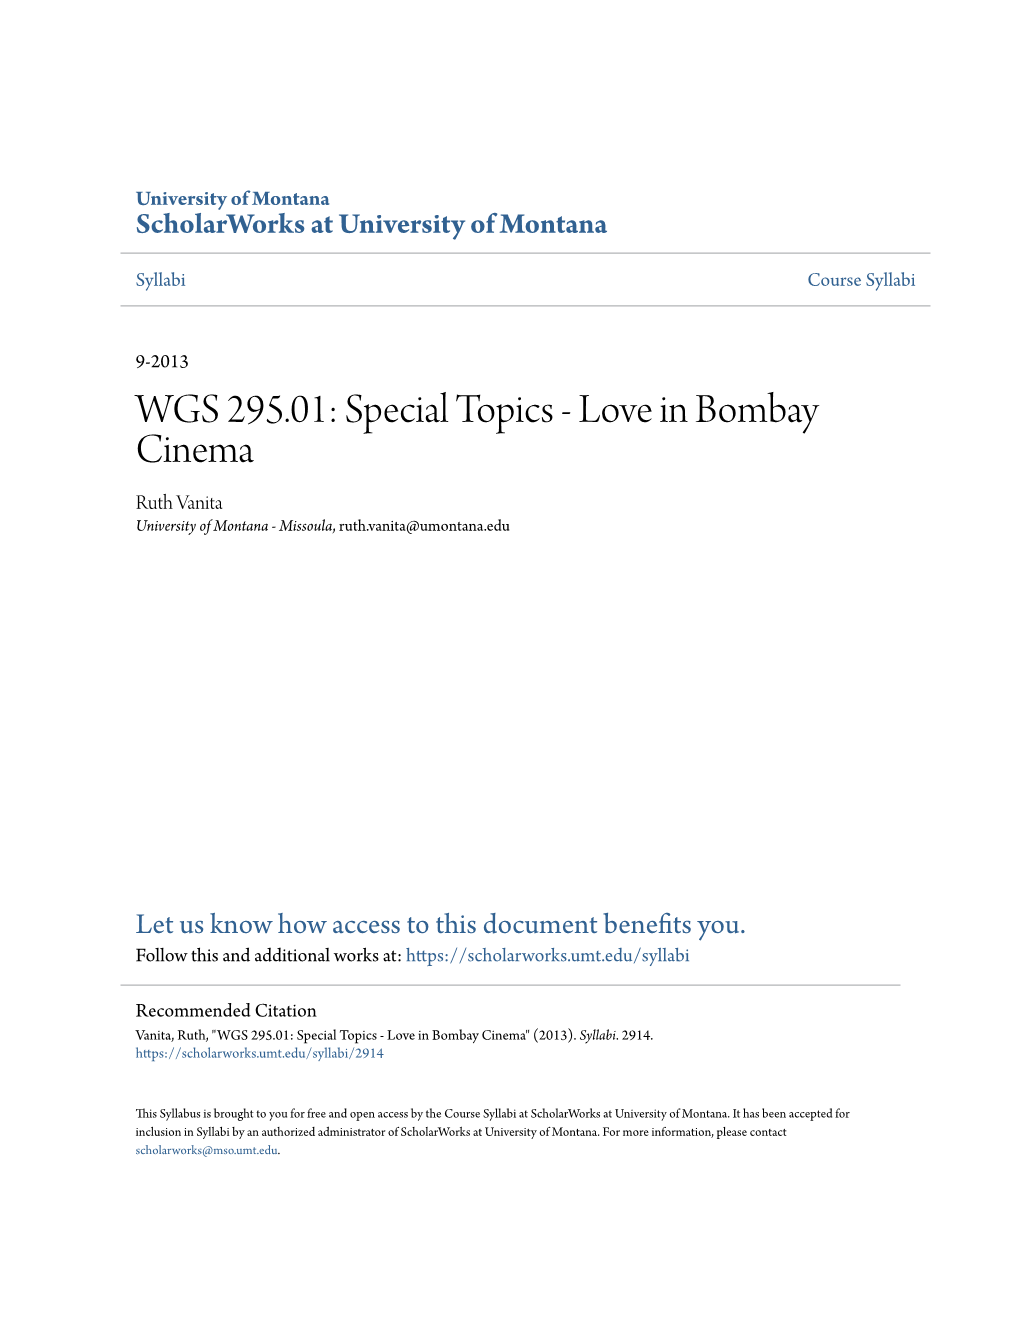 WGS 295.01: Special Topics - Love in Bombay Cinema Ruth Vanita University of Montana - Missoula, Ruth.Vanita@Umontana.Edu